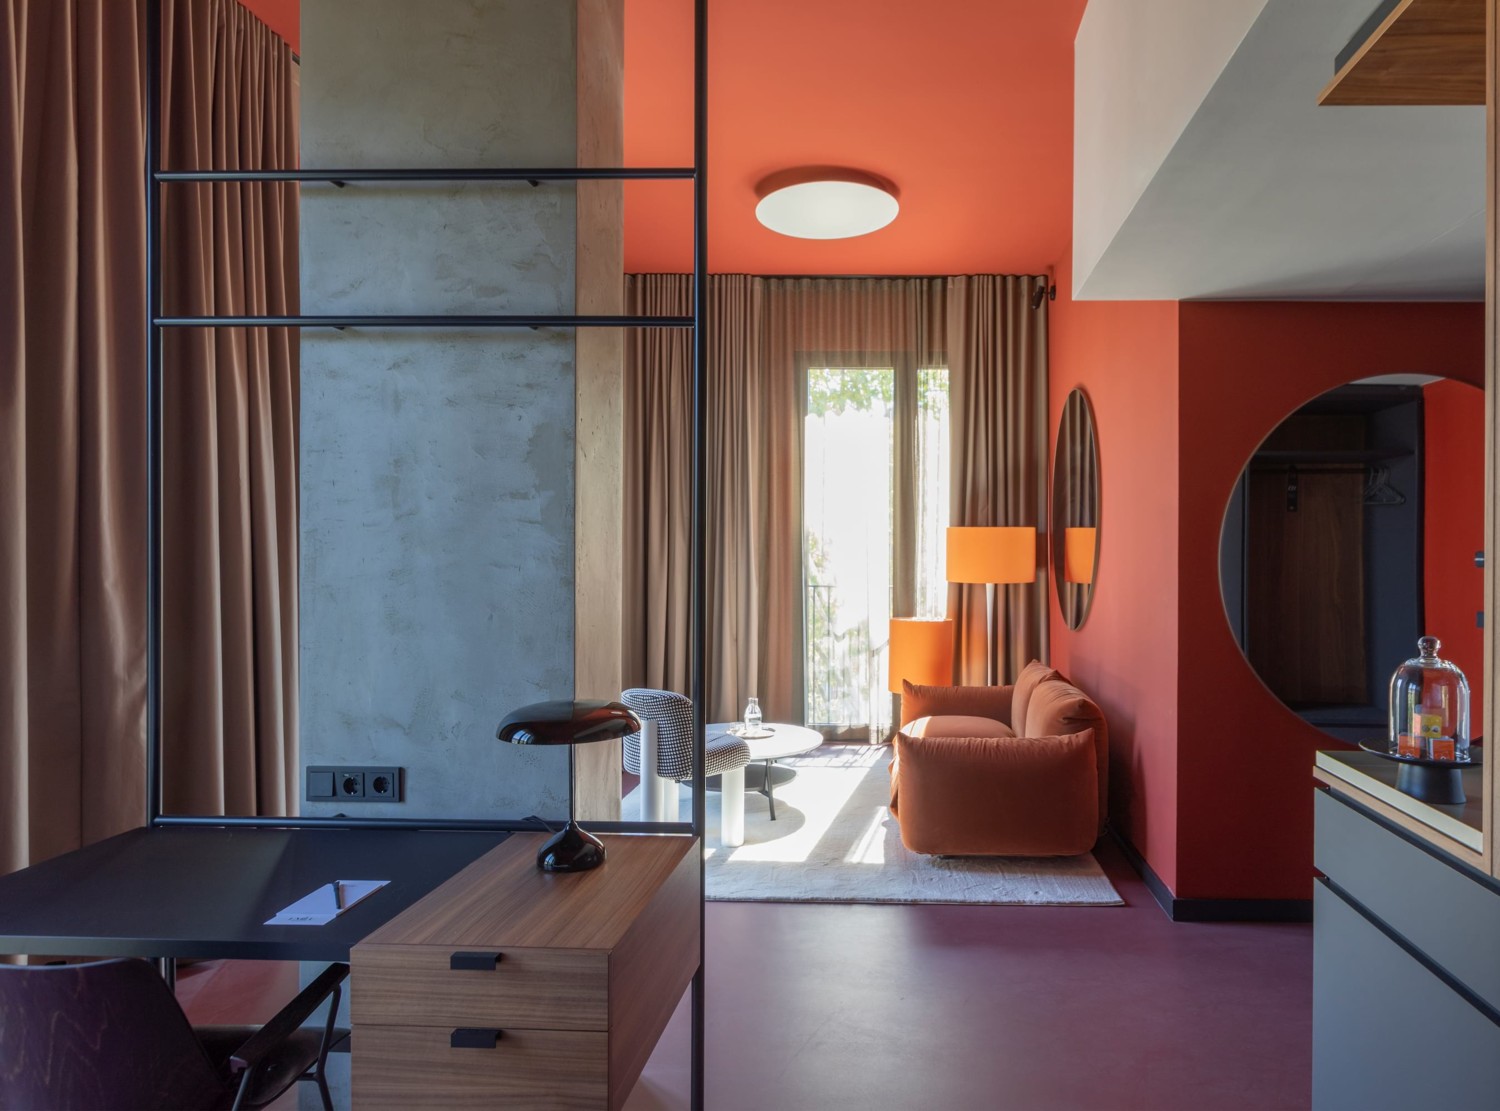 Stilvolles Hotelzimmer mit Sitz- und Arbeitsbereich in Orangetönen